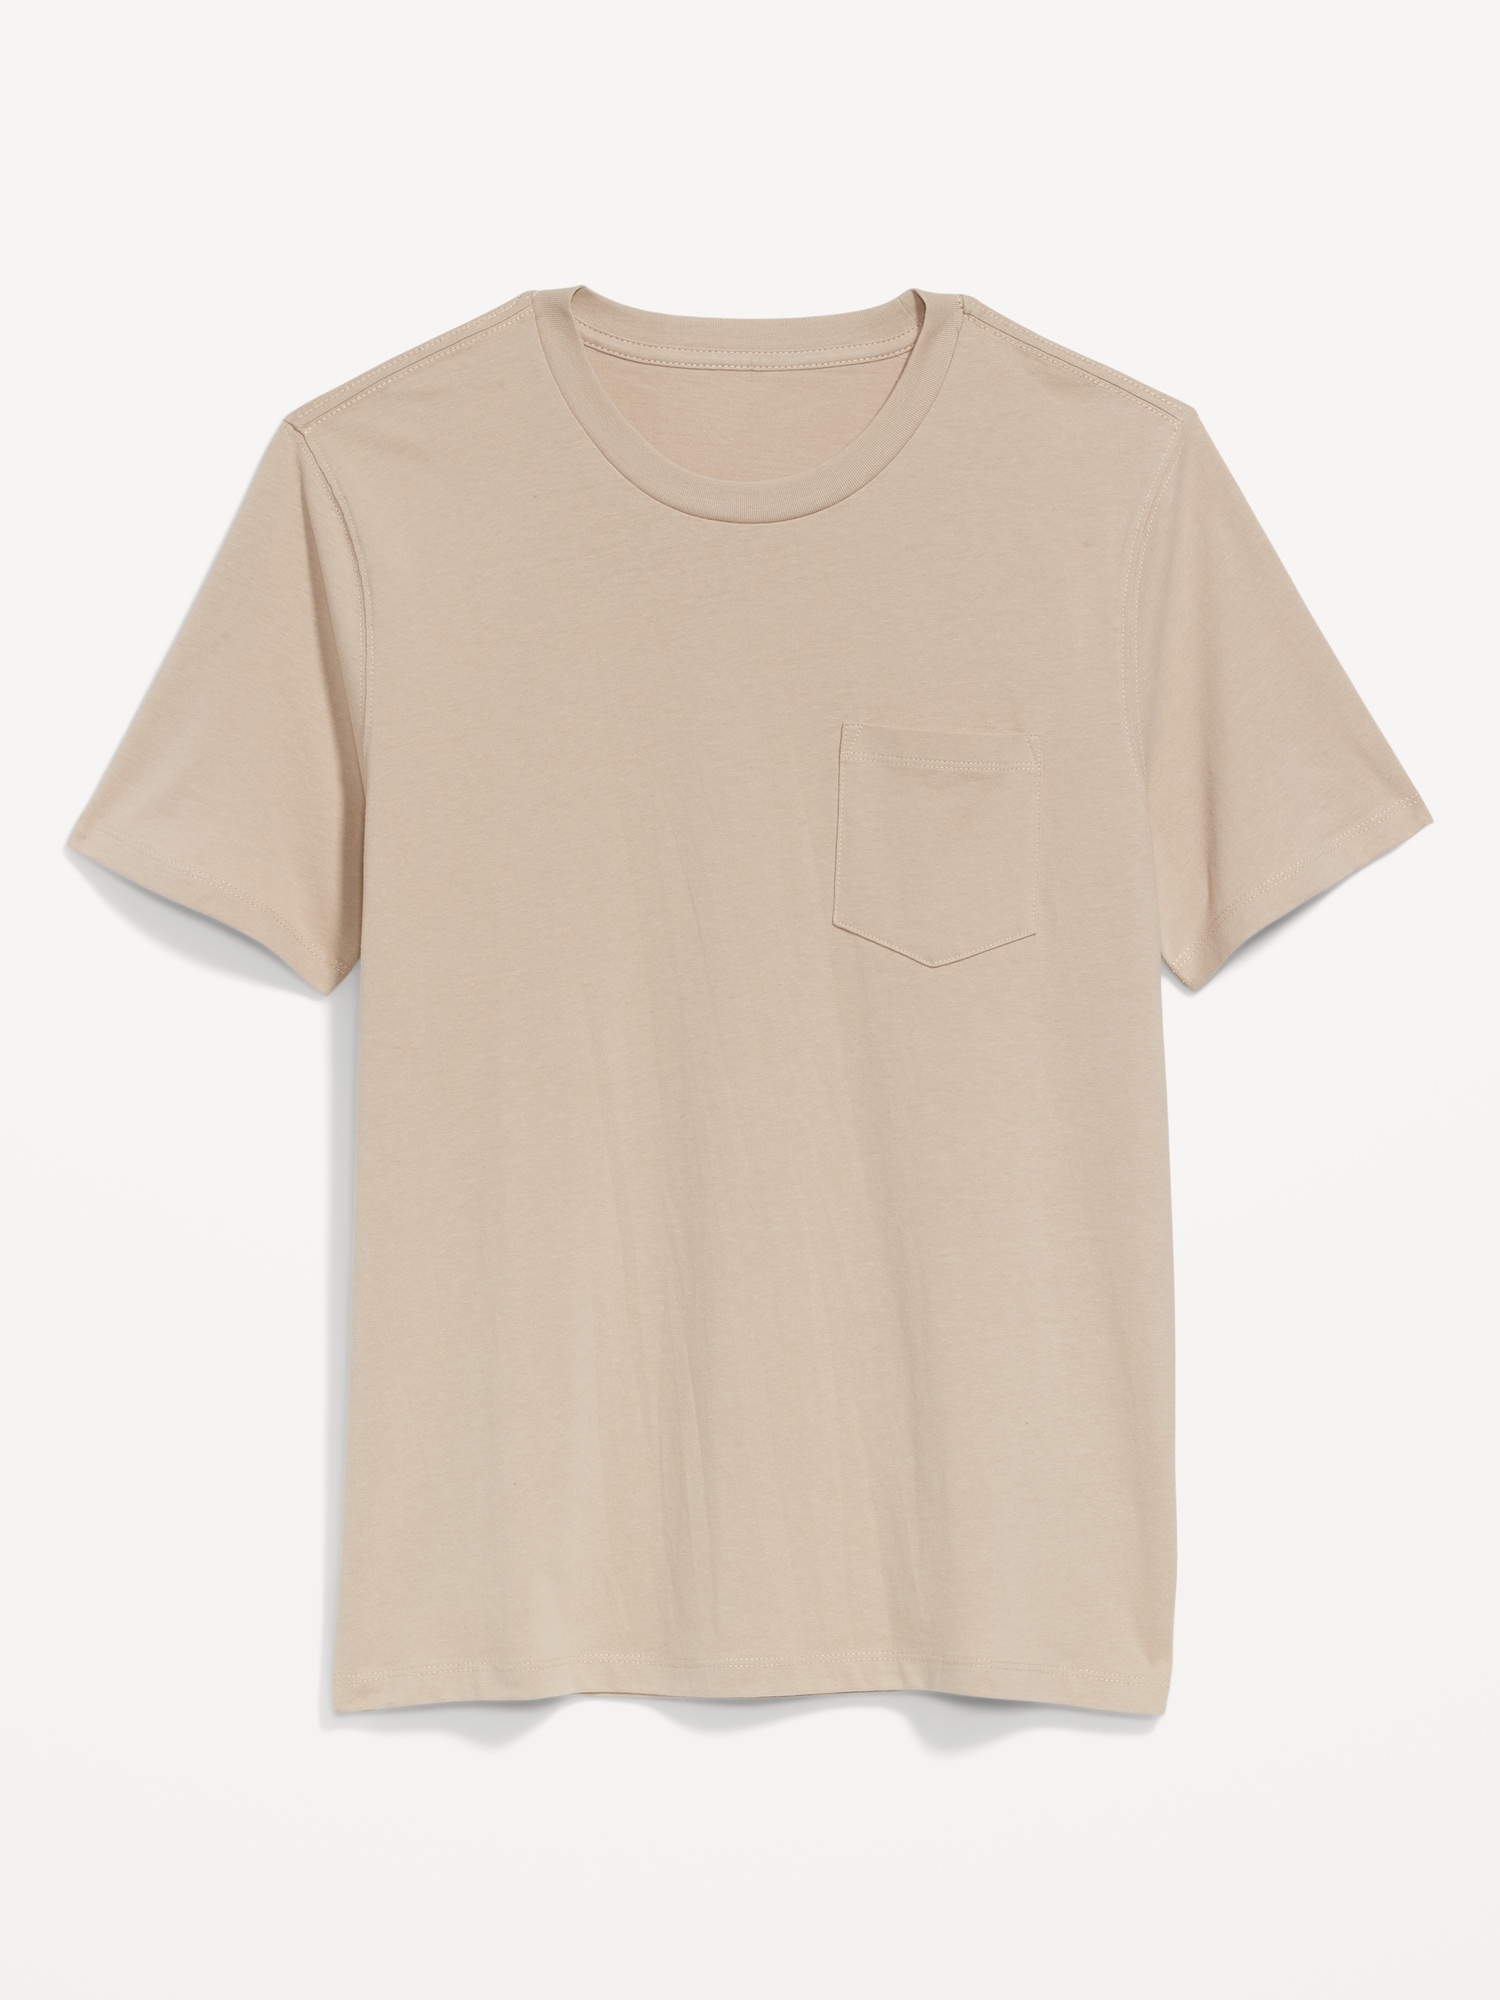 Old Navy Soft-Washed Chest-Pocket Crew-Neck T-Shirt for Men beige. 1